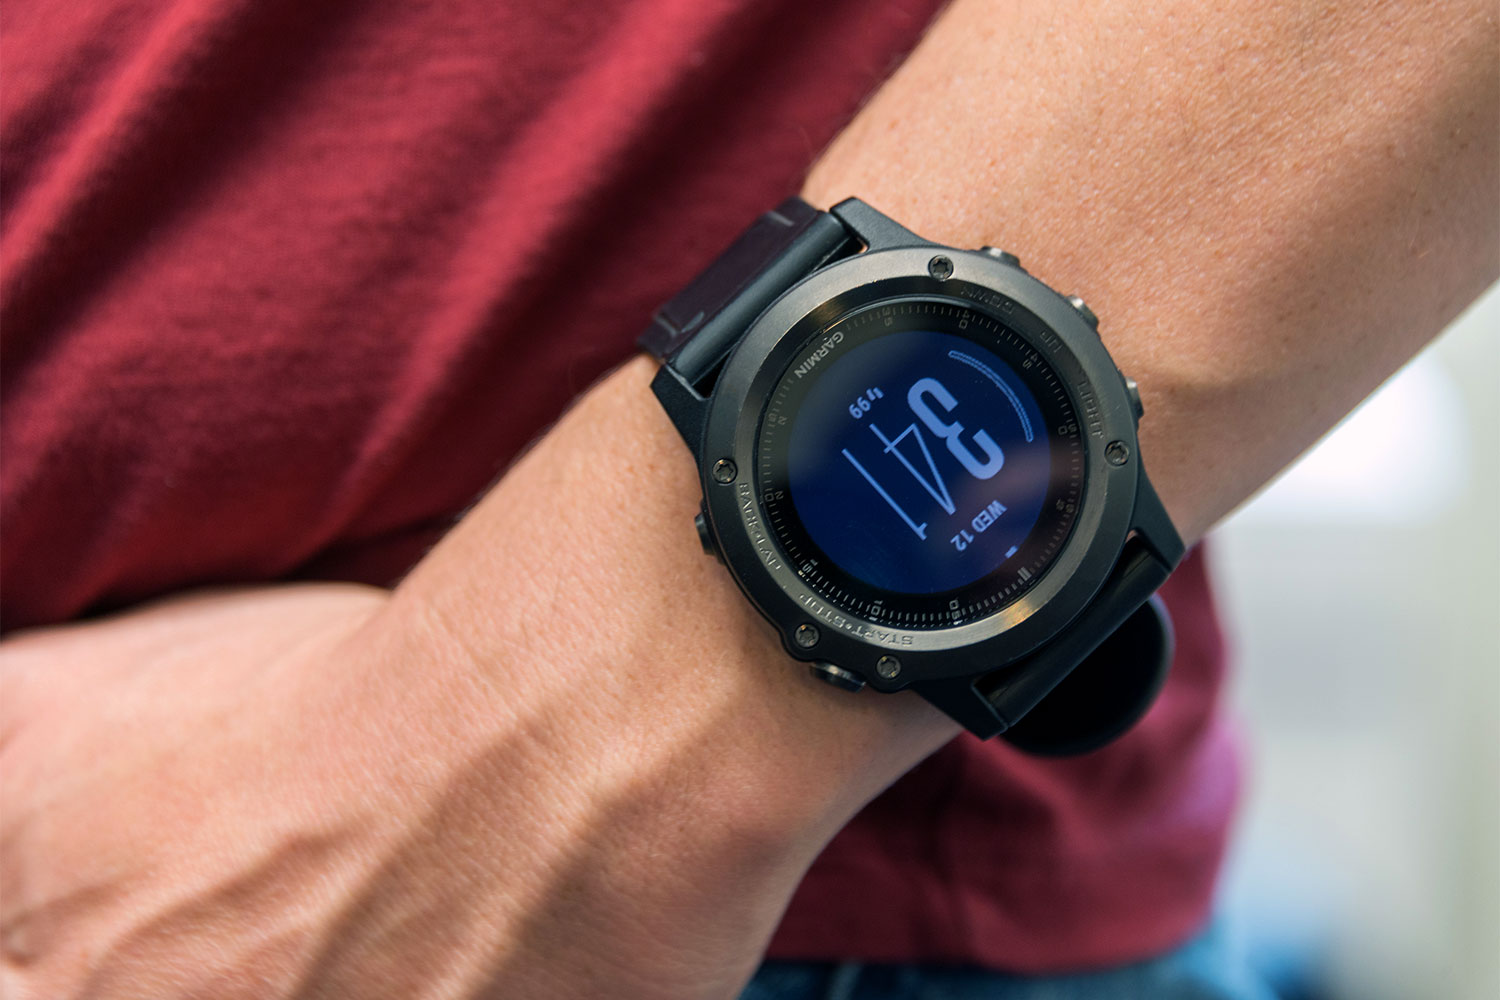 kern wasserette Voorwaarden Garmin Fenix 3 GPS Smartwatch Review | Digital Trends